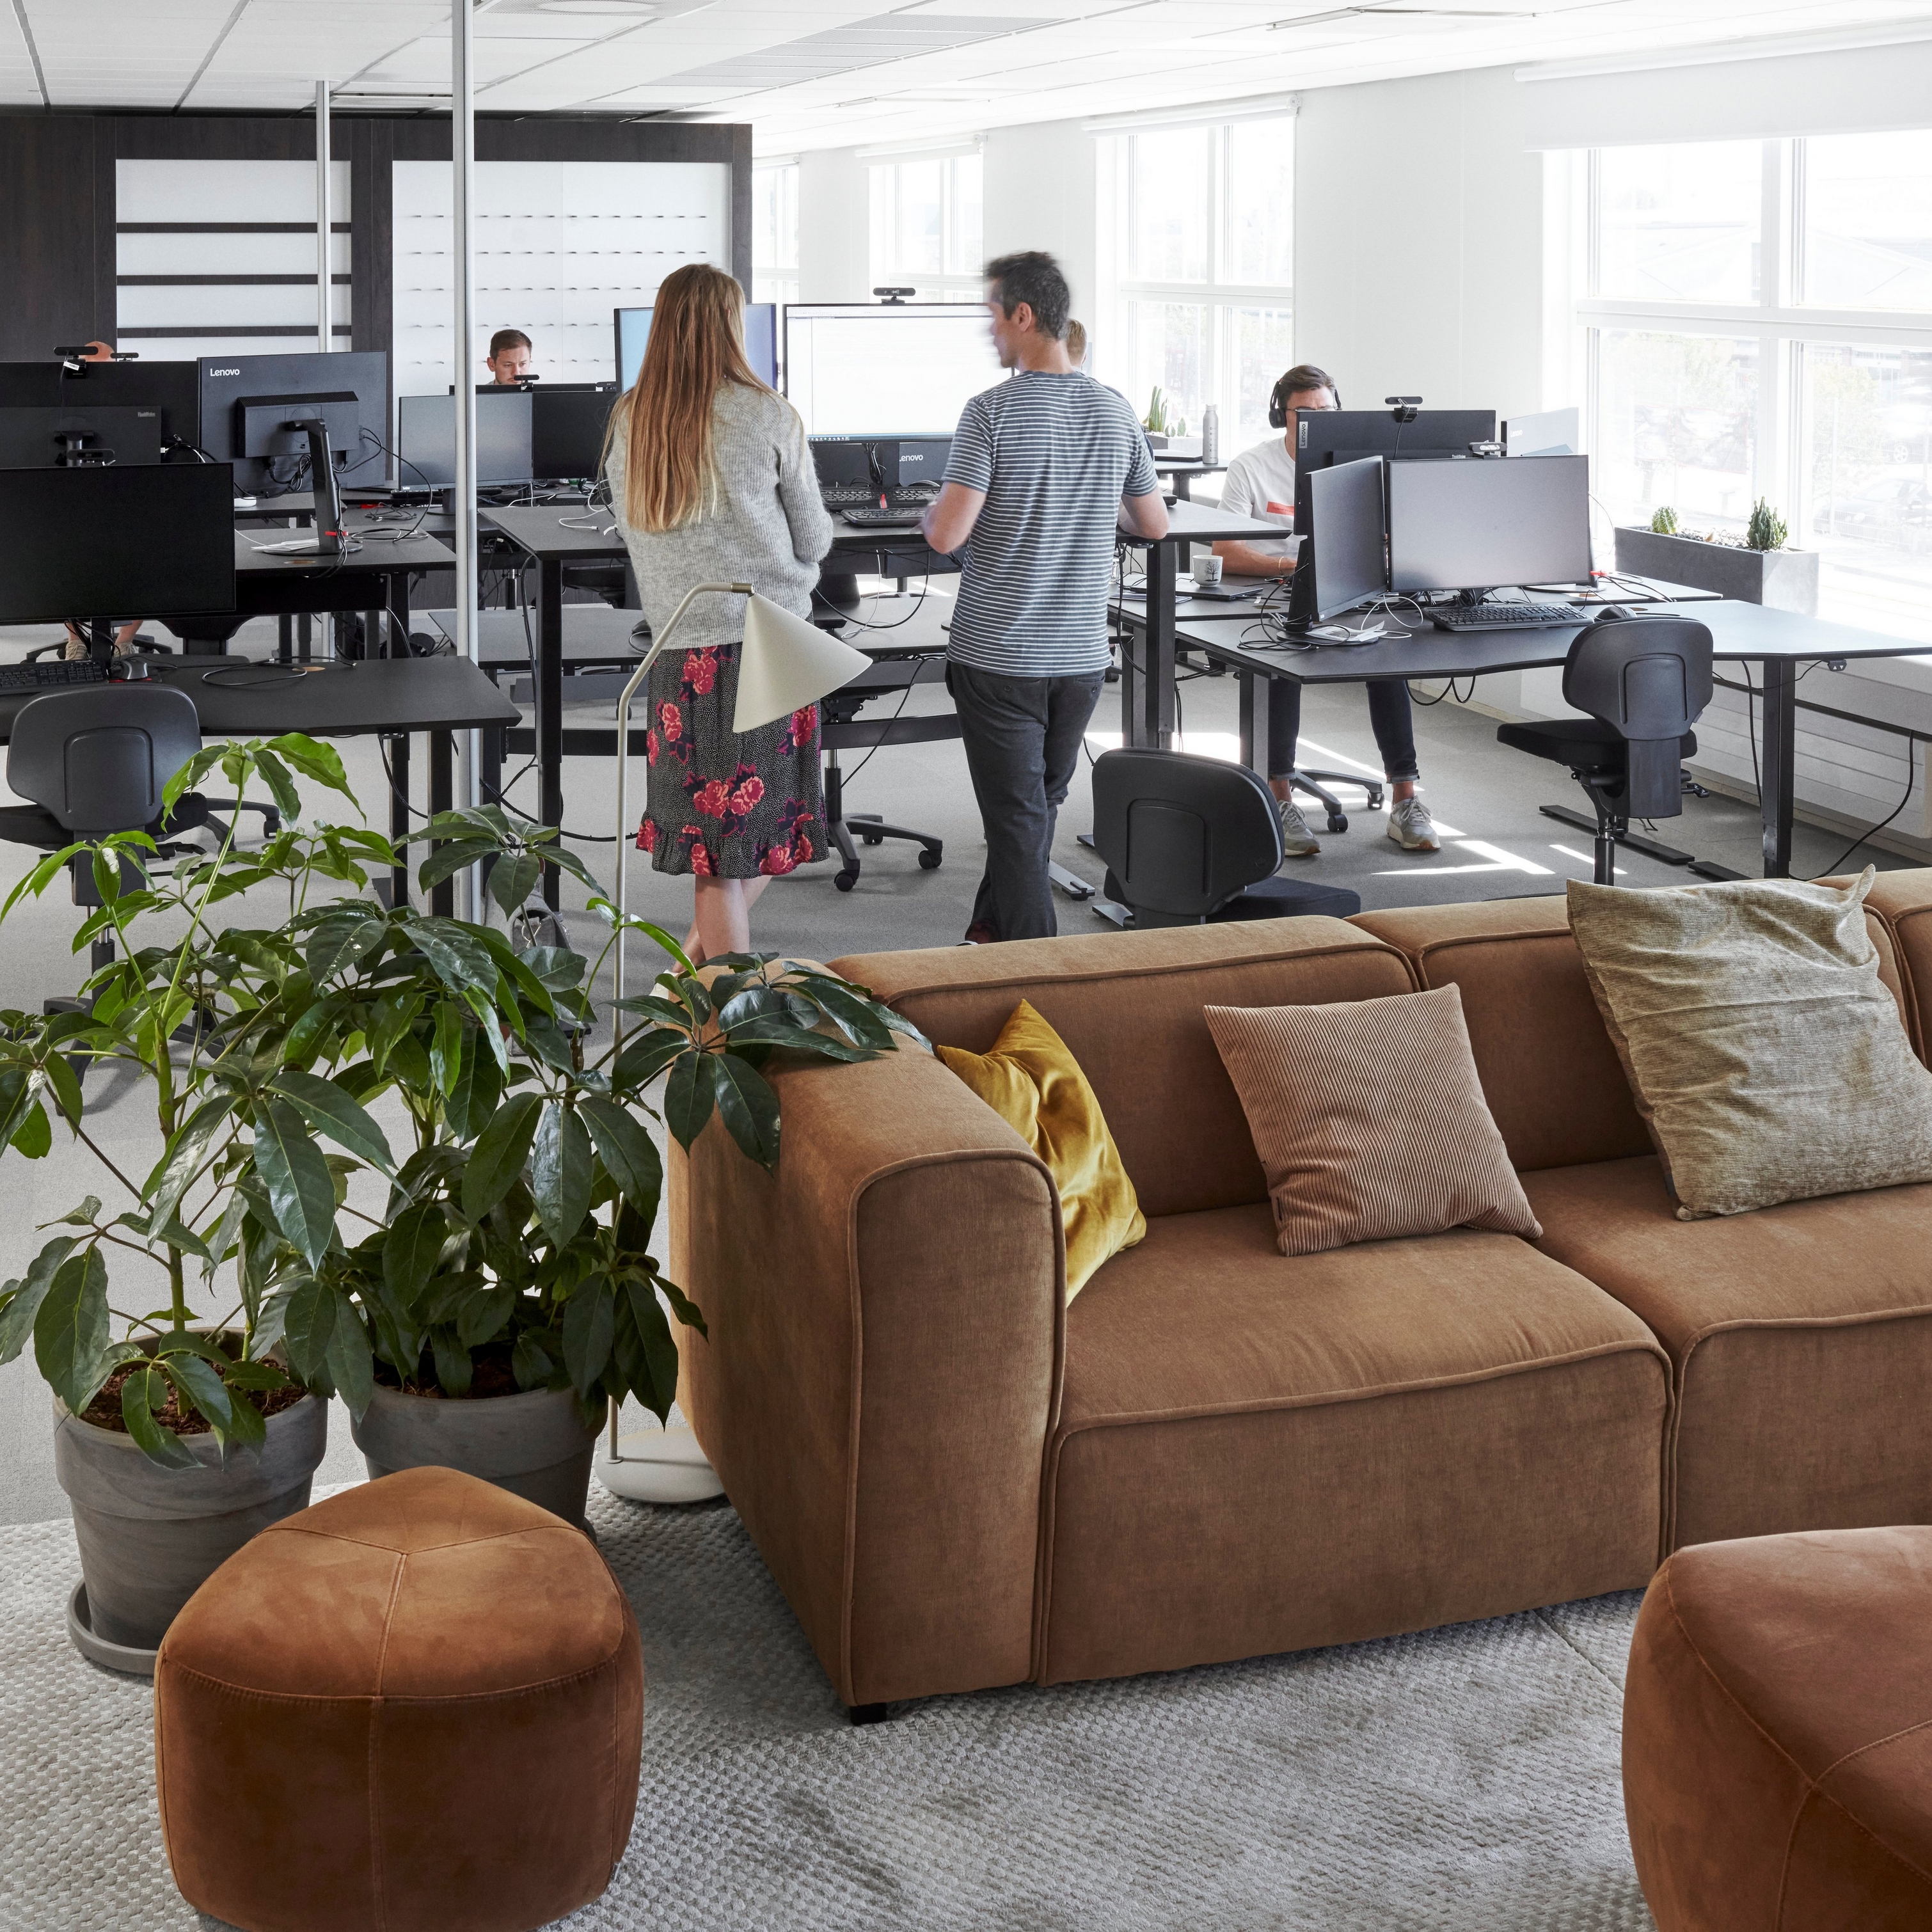 Moderní kancelářský prostor v sídle BoConcept se zaměstnanci, počítači, rostlinami a hnědou pohovkou Carmo.